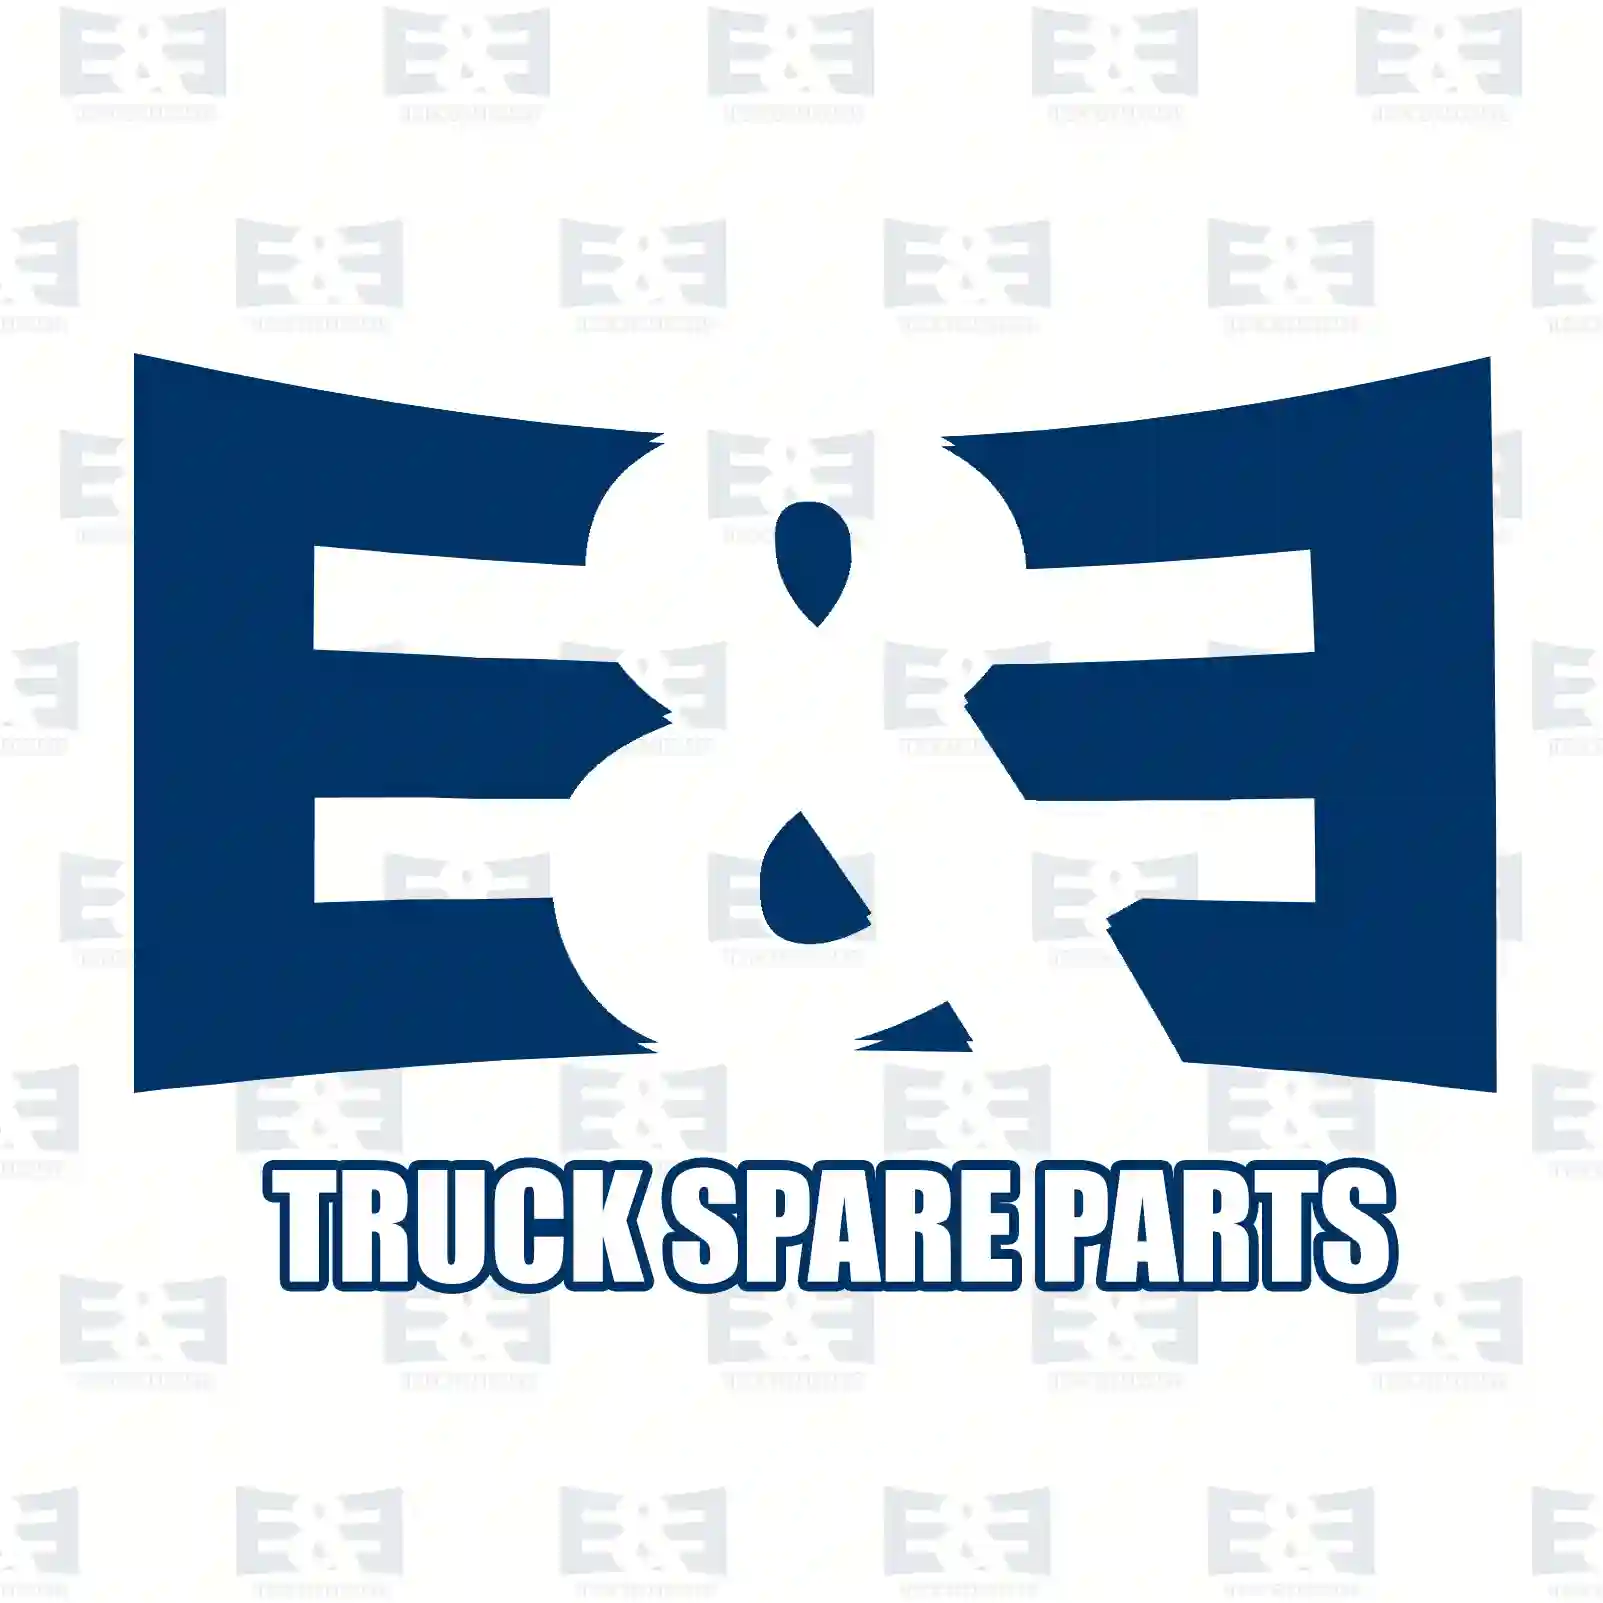 Oil filter insert, gearbox, 2E2277794, 0691954, 1607475, 691954, 42491185, ZG02437-0008 ||  2E2277794 E&E Truck Spare Parts | Truck Spare Parts, Auotomotive Spare Parts Oil filter insert, gearbox, 2E2277794, 0691954, 1607475, 691954, 42491185, ZG02437-0008 ||  2E2277794 E&E Truck Spare Parts | Truck Spare Parts, Auotomotive Spare Parts